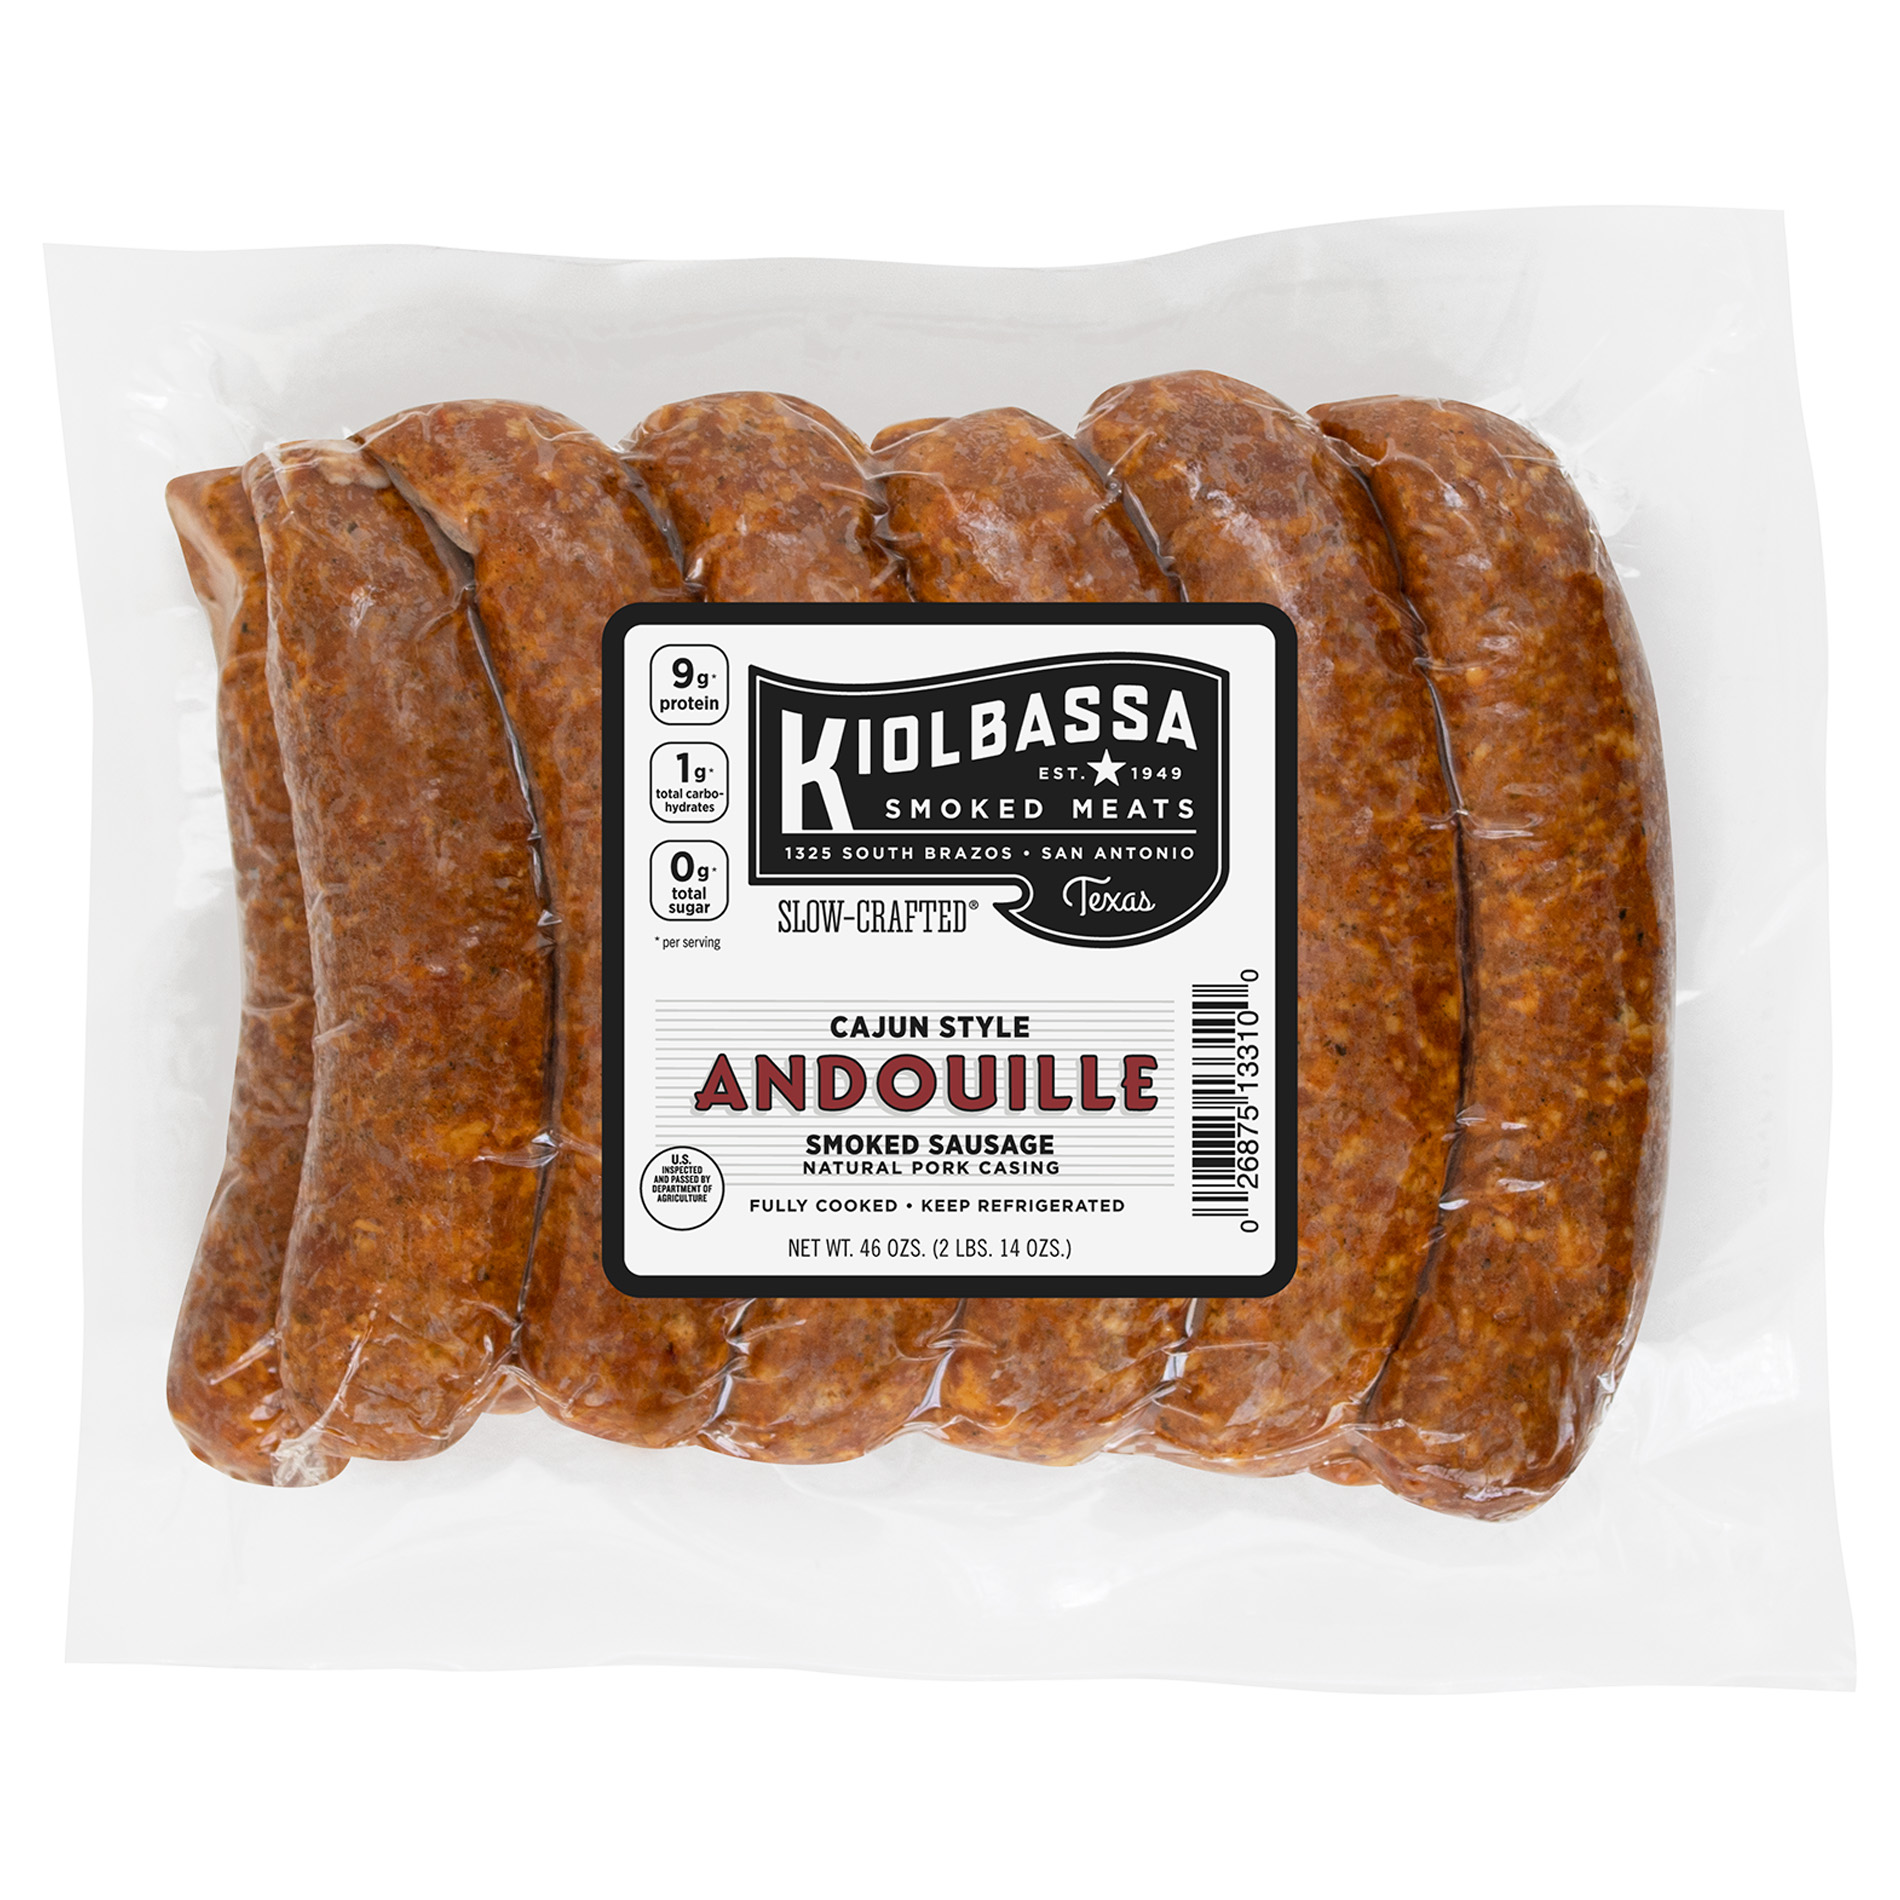 Cajun-Style Andouille Smoked Sausage